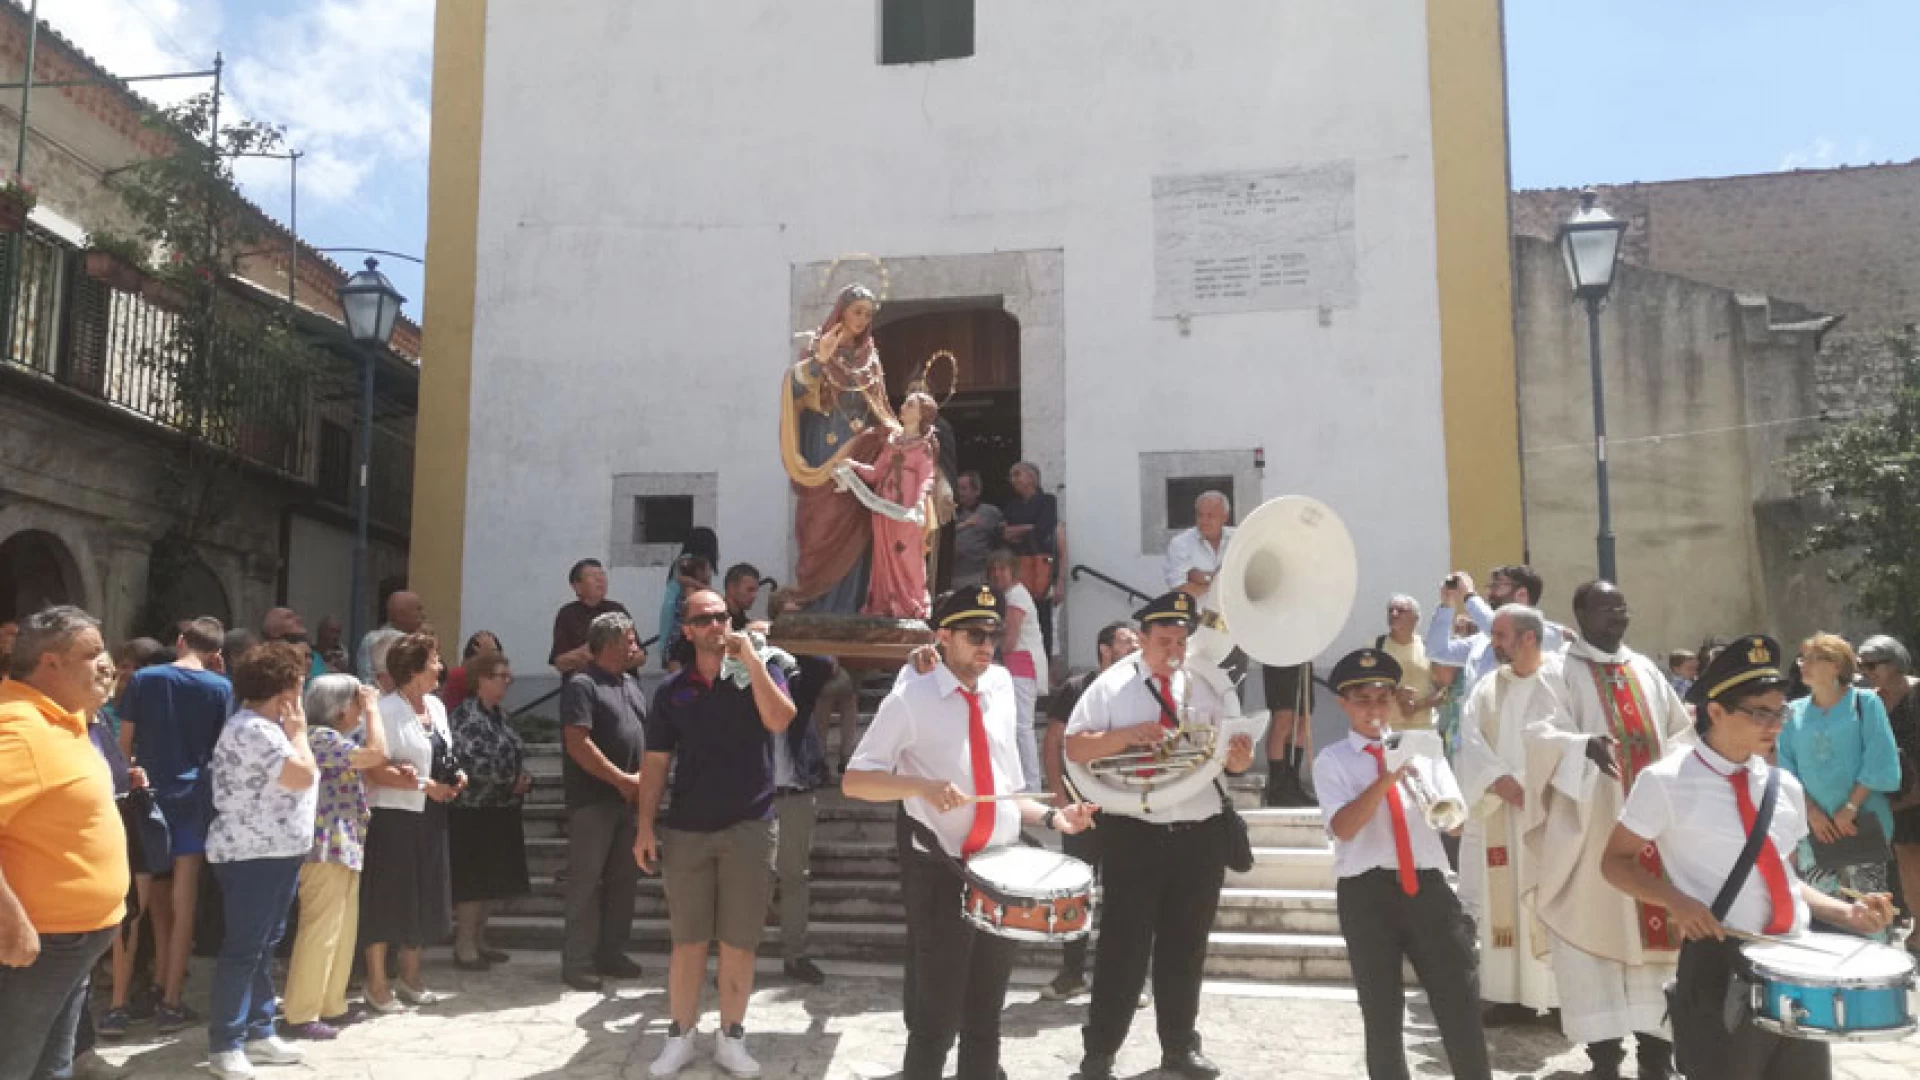 Pellegrinaggio a Selvone per Sant’Anna, la nuova Pro Loco di Colli organizza un autobus per tutti coloro che vorranno partecipare ai festeggiamenti religiosi.